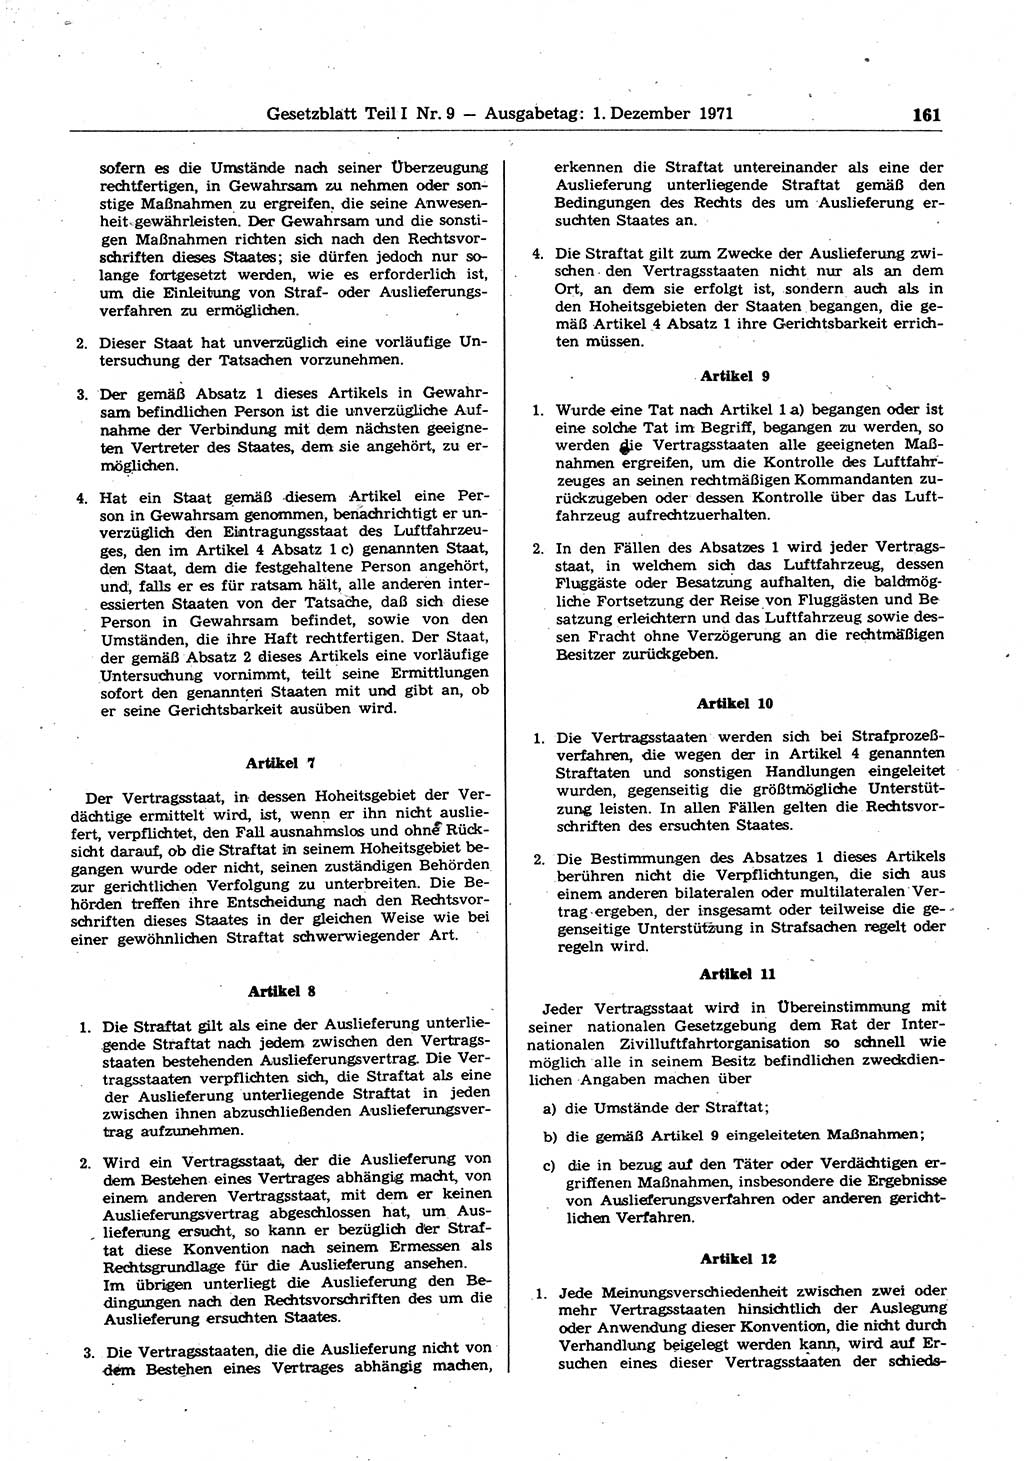 Gesetzblatt (GBl.) der Deutschen Demokratischen Republik (DDR) Teil Ⅰ 1971, Seite 161 (GBl. DDR Ⅰ 1971, S. 161)